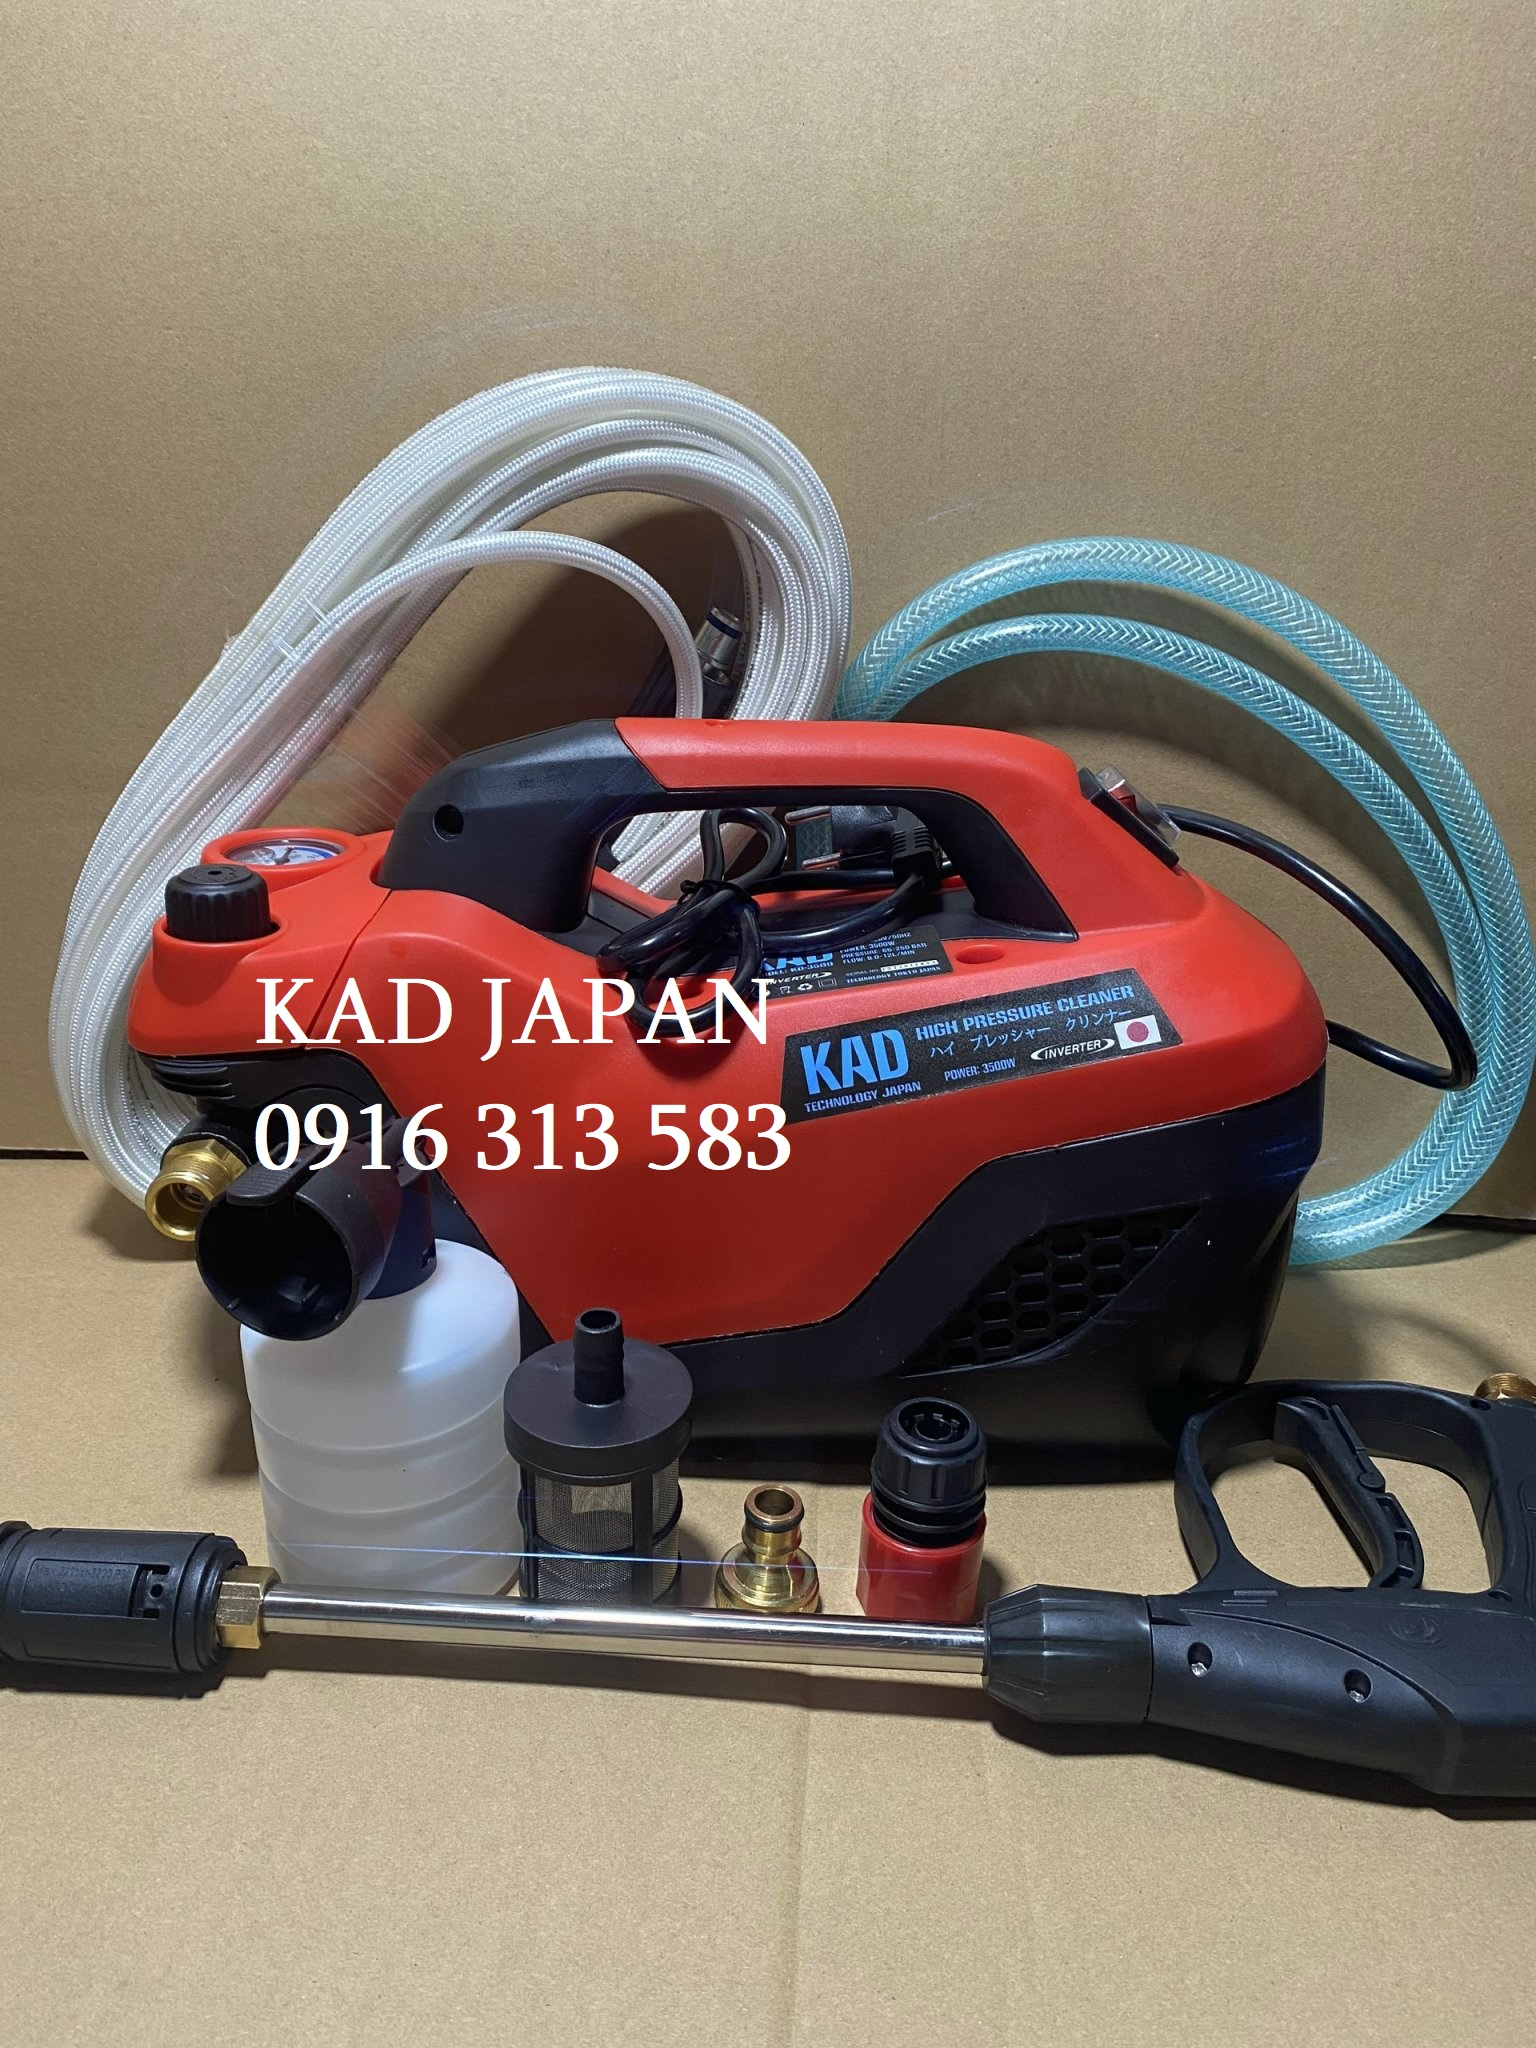 Máy phun xịt rửa xe áp lực cao KAD JAPAN- KD 3589, Công suất mạnh 3500W, Điều chỉnh được áp lực phun, Phù hợp cho mọi công việc, Dây áp lực cao 15m loại dẻo, Chống xoắn, Chống gập tốt(giao màu ngẫu nhiên).